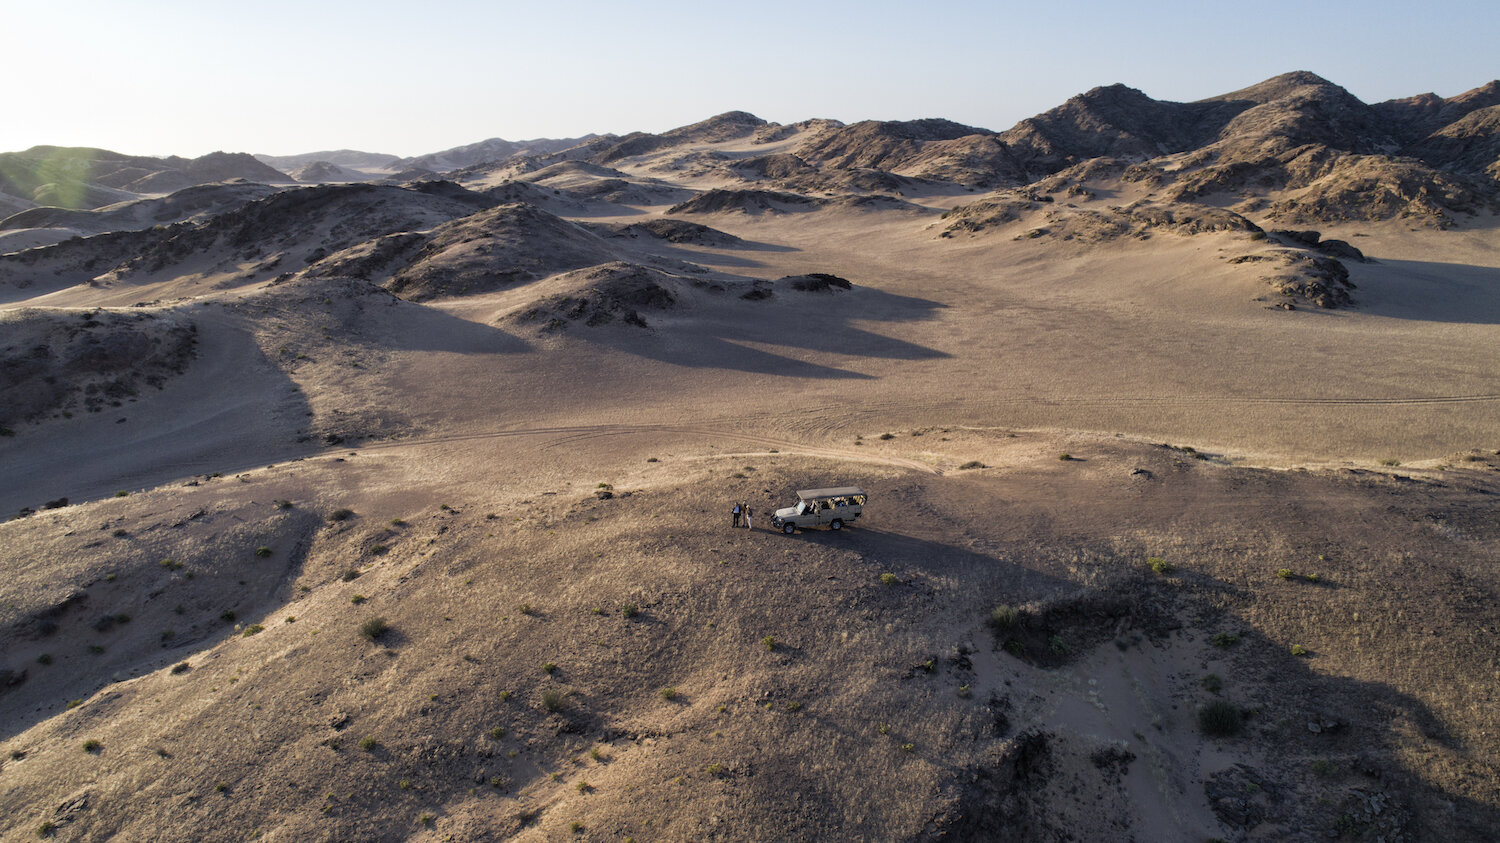 38Hoanib Valley Camp - Arial vehicle & dunes.jpg